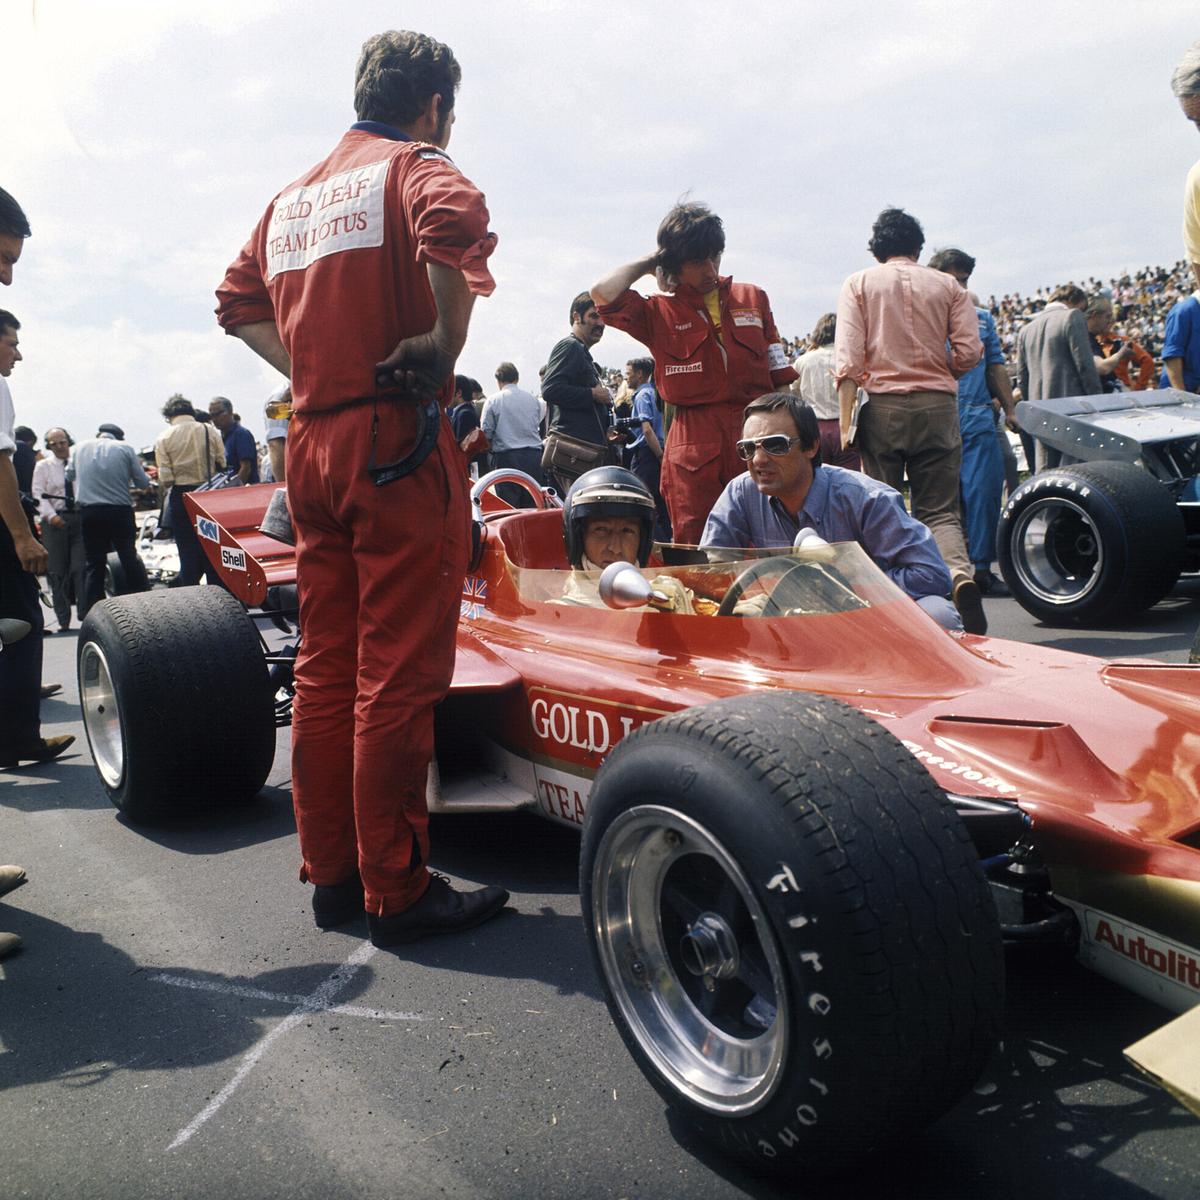 "Jochen Rindt - Der Weltmeister aus Graz": Jochen Rindt mit Bernie Ecclestone, 1970 Grand Prix in Großbritannien